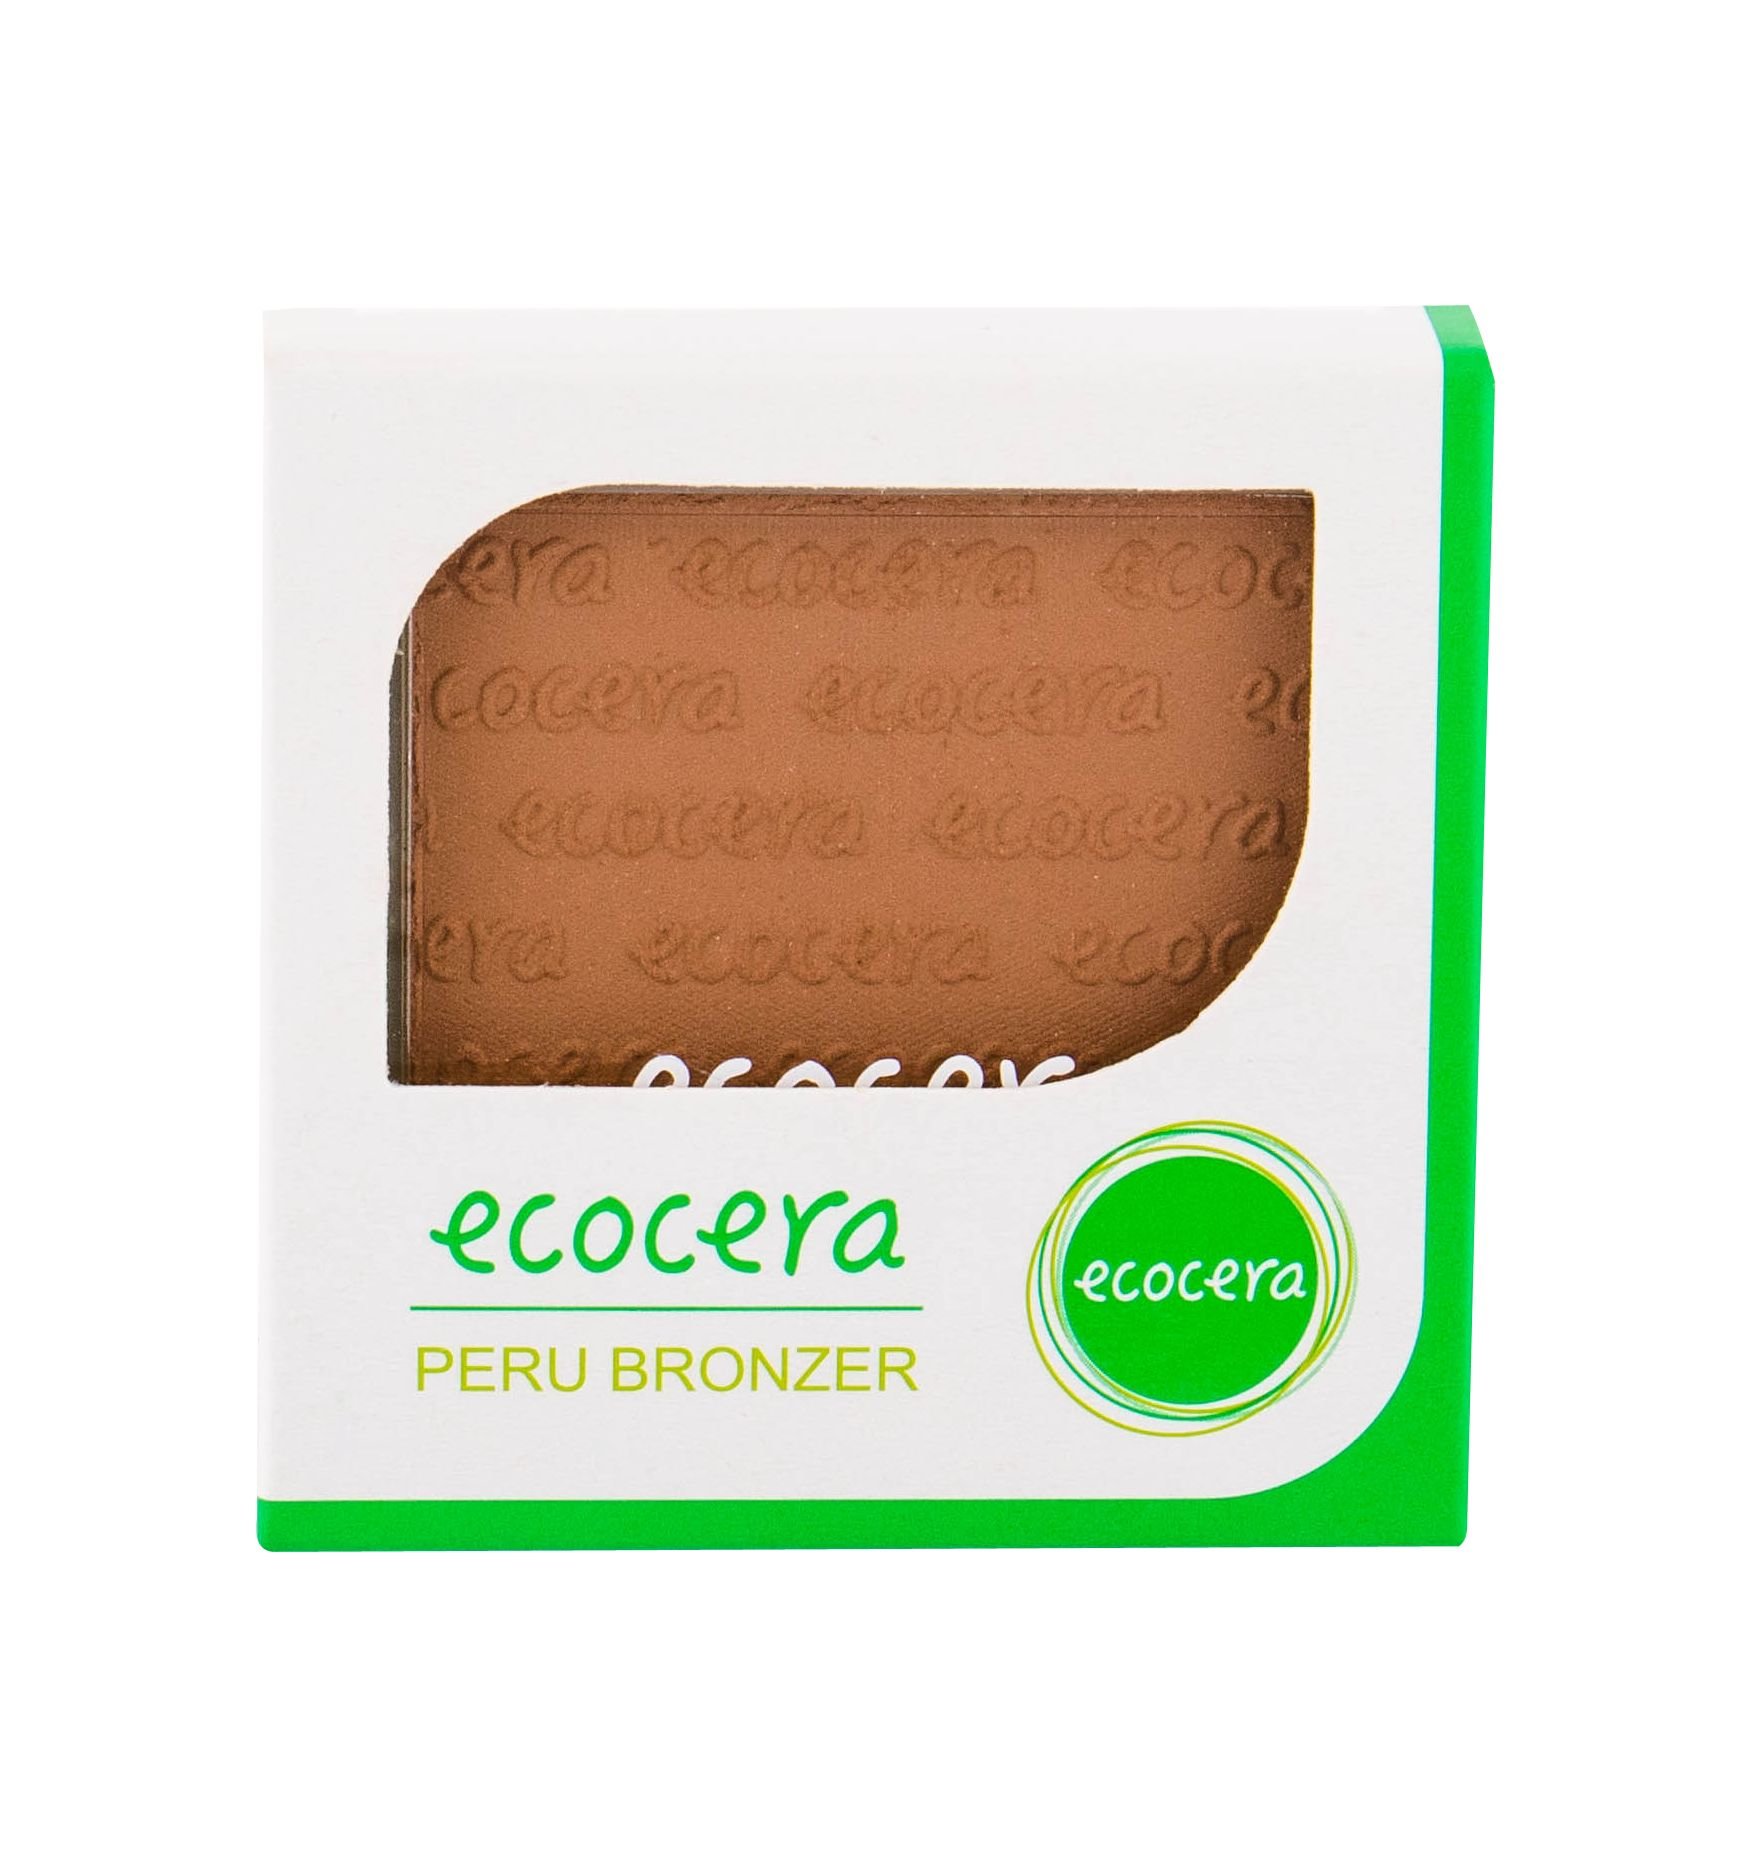 Ecocera Bronzer